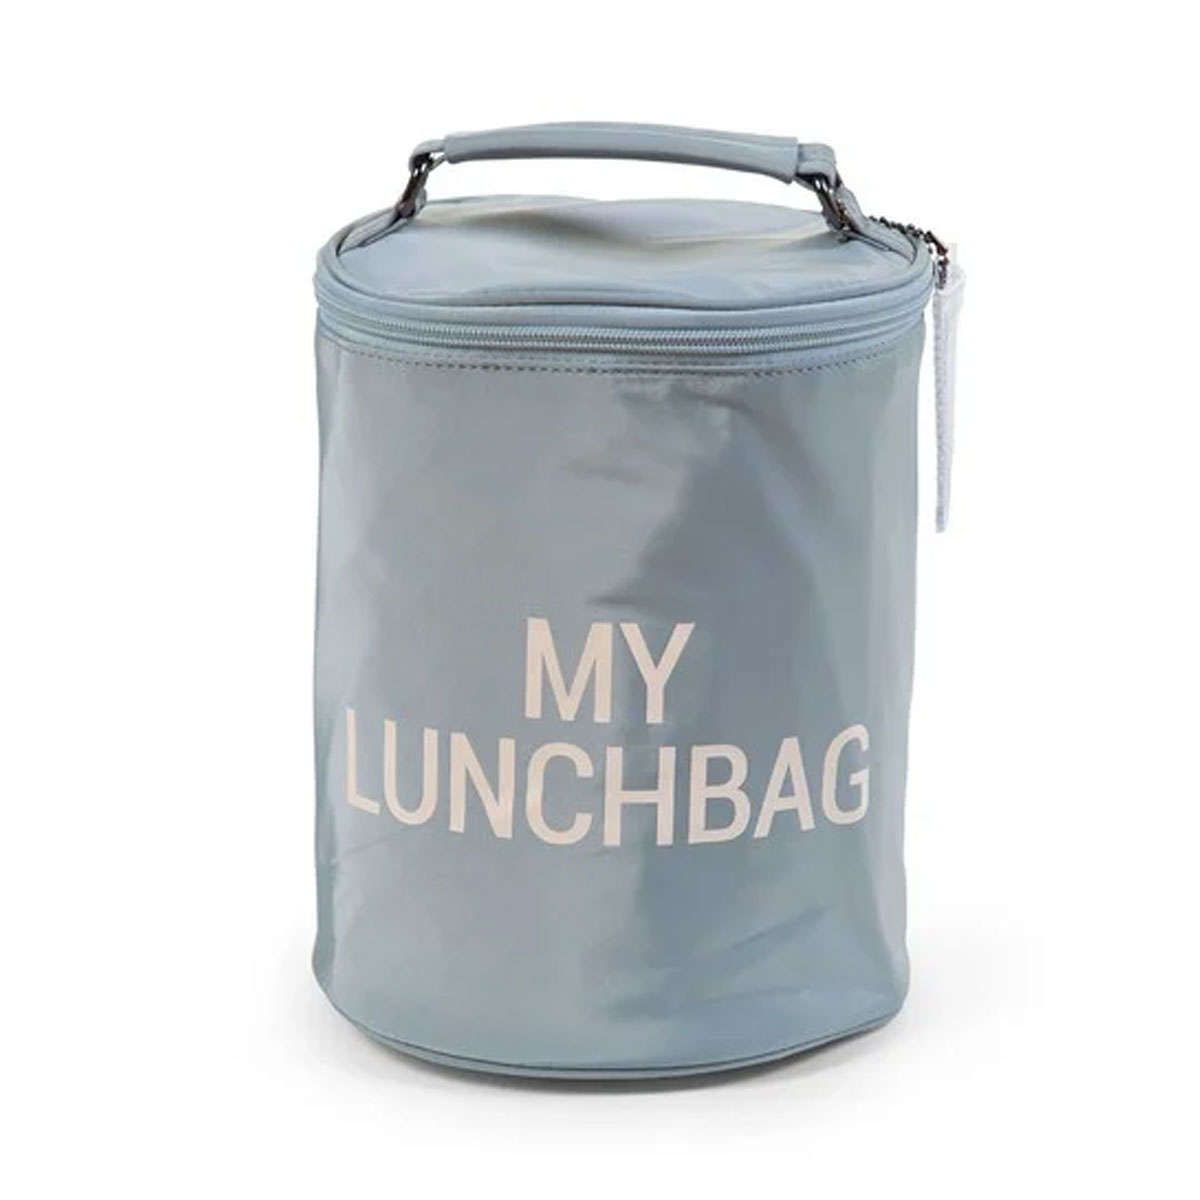 Τσάντα με ισοθερμική επένδυση My Lunch Bag  grey-off white Childhome